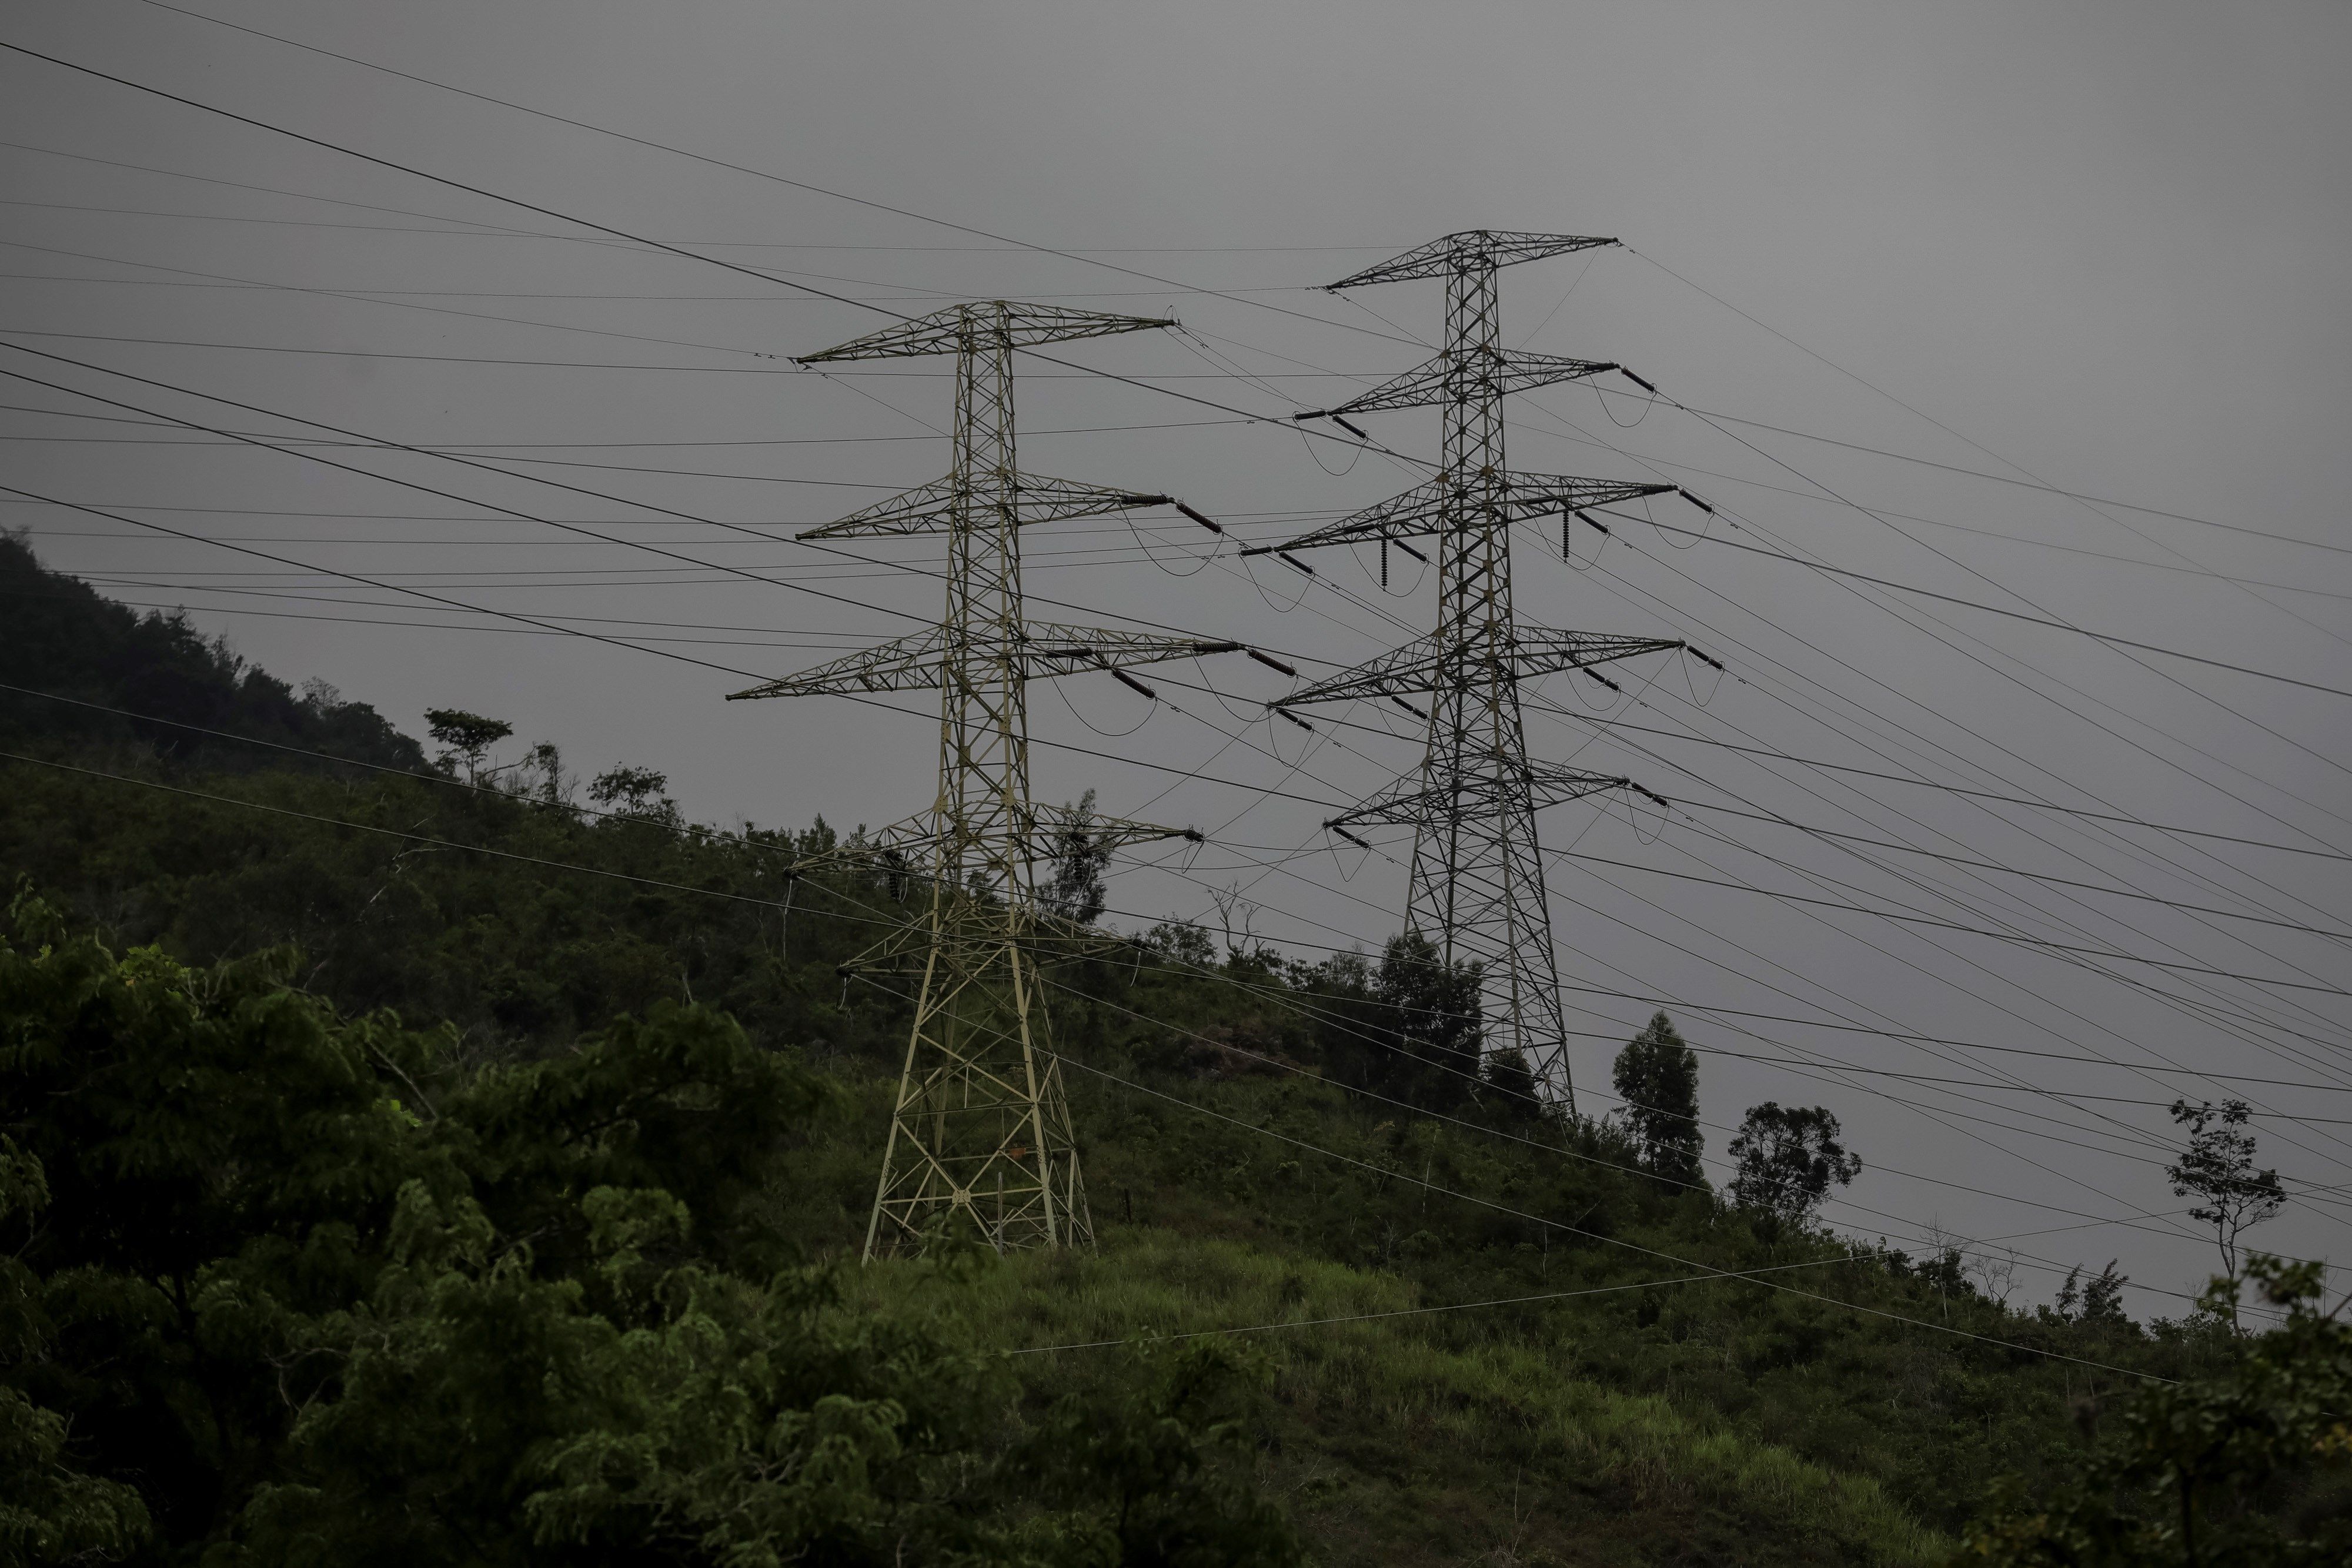 Se registró fuerte bajón eléctrico en diversos estados de Venezuela en la noche del #3Nov